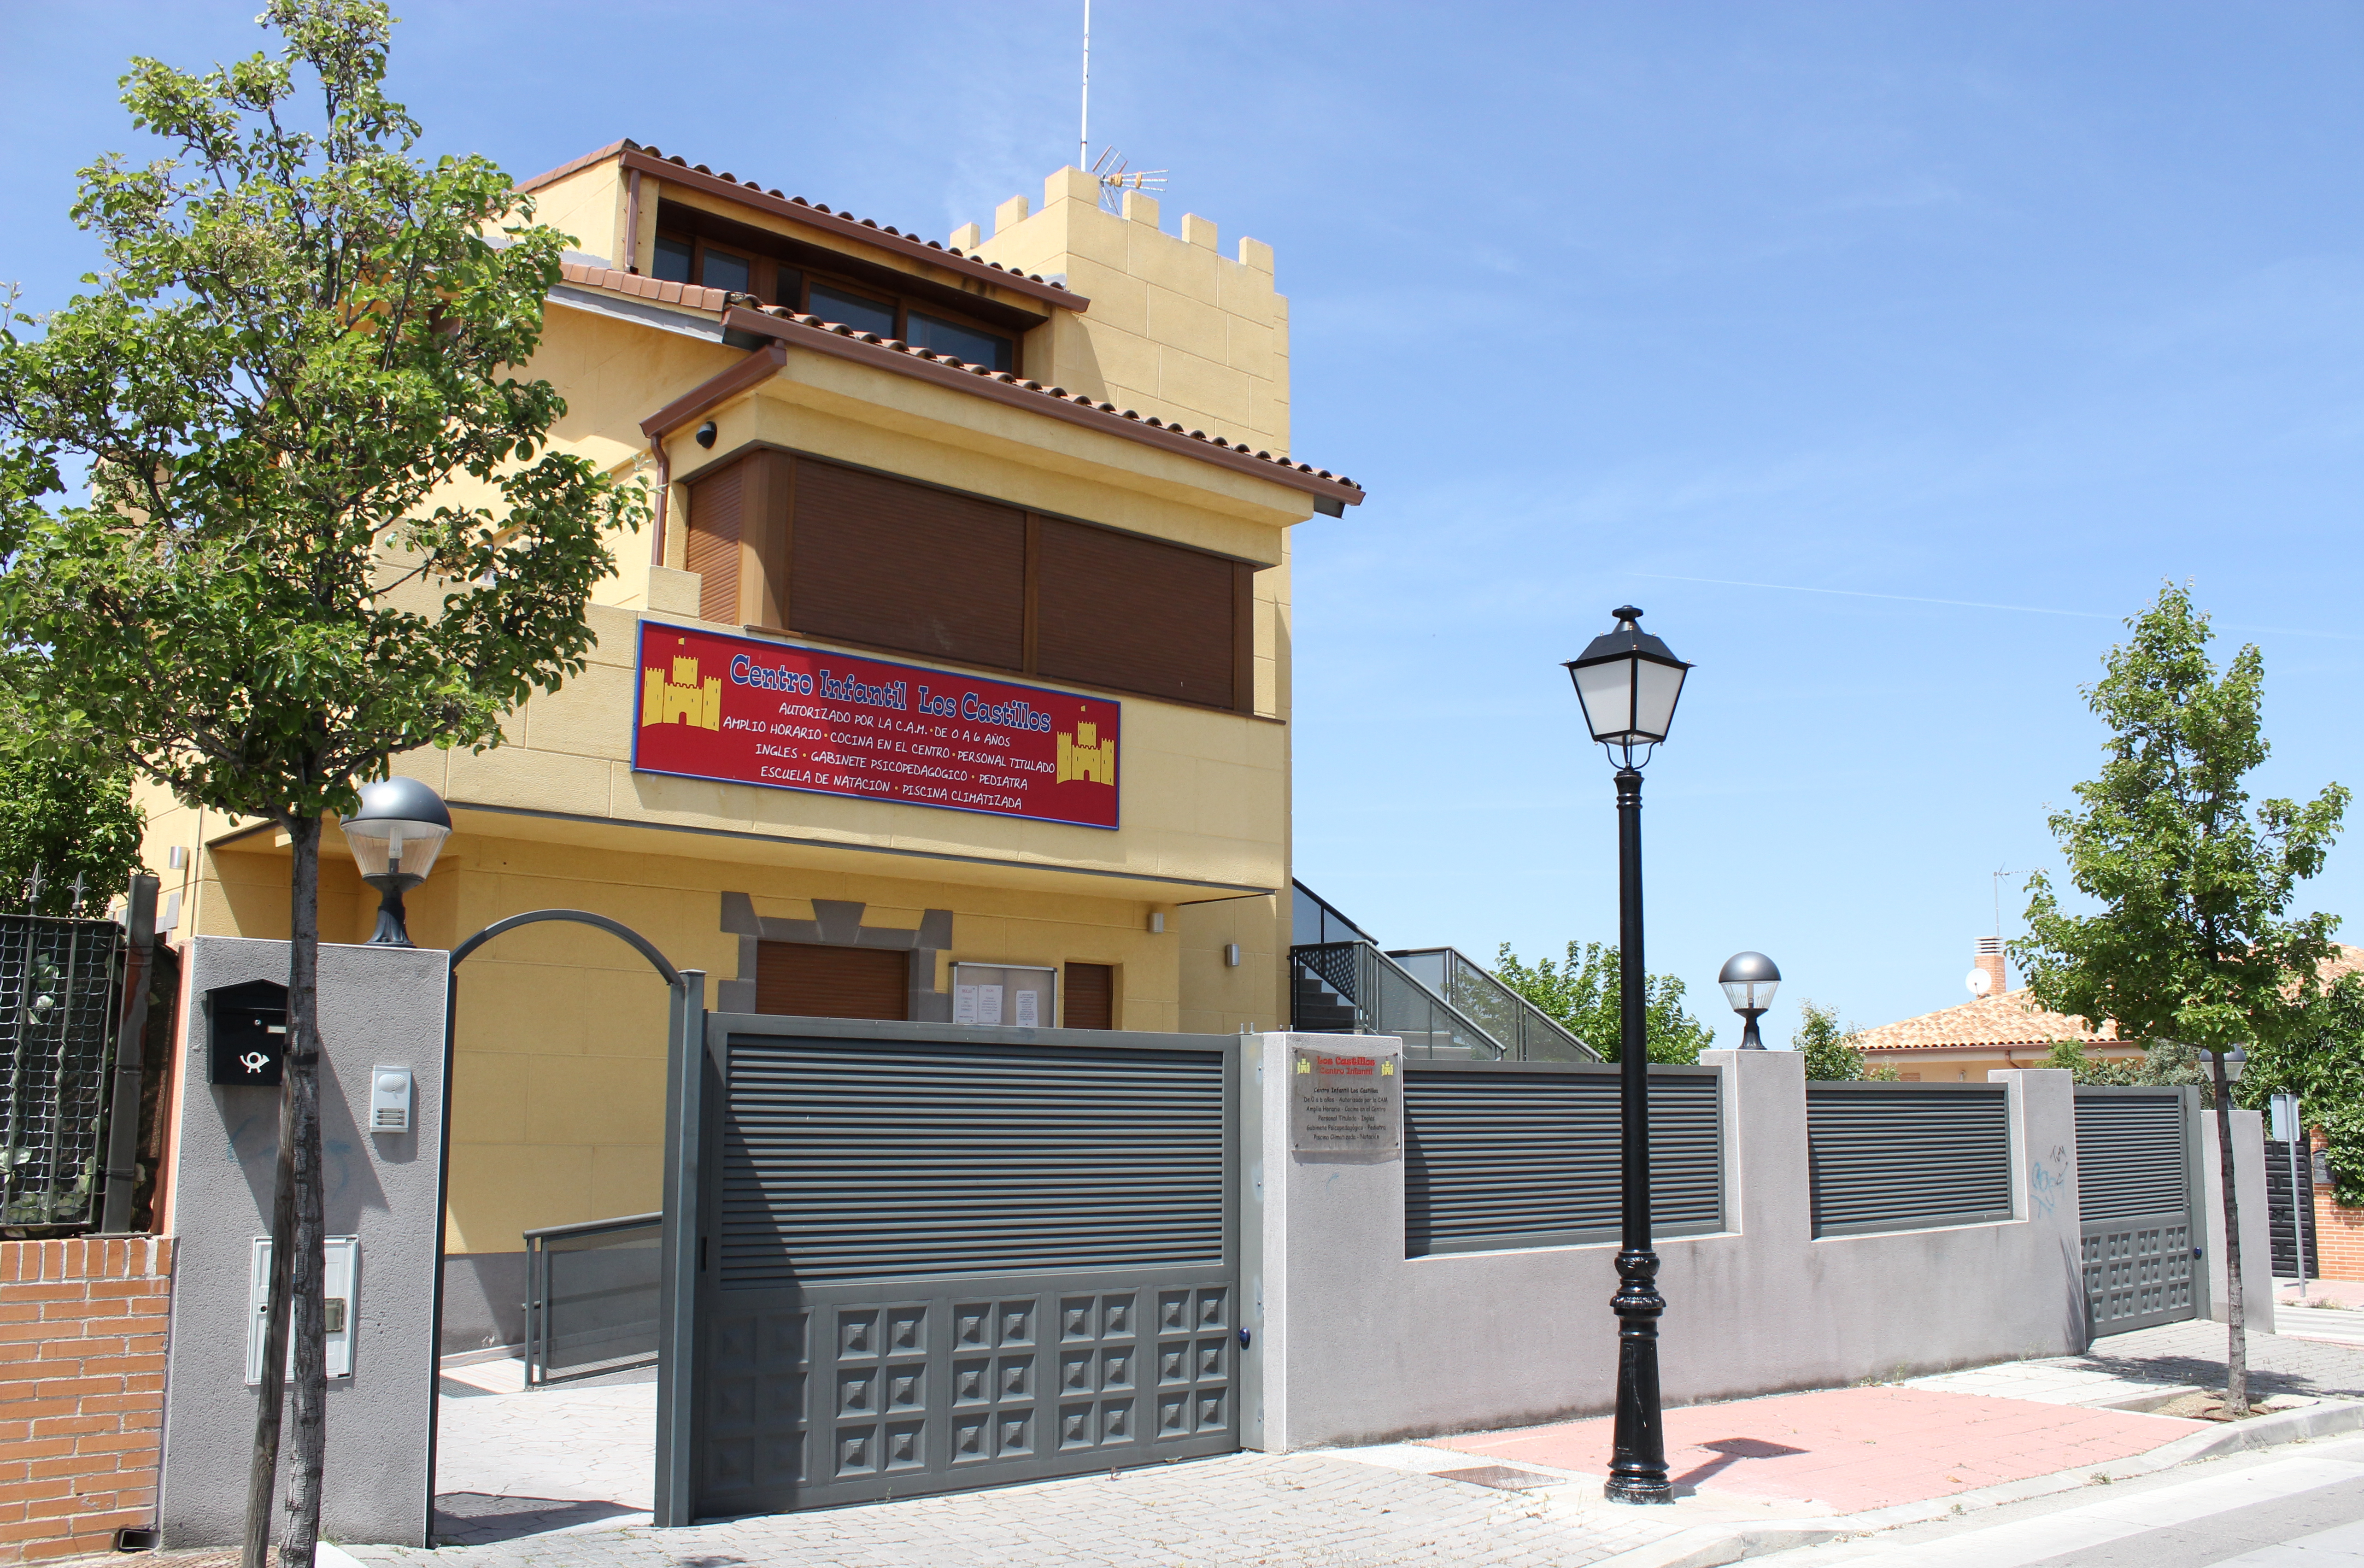 Foto 21 de Guarderías y Escuelas infantiles en Arroyomolinos | Guardería Los Castillos